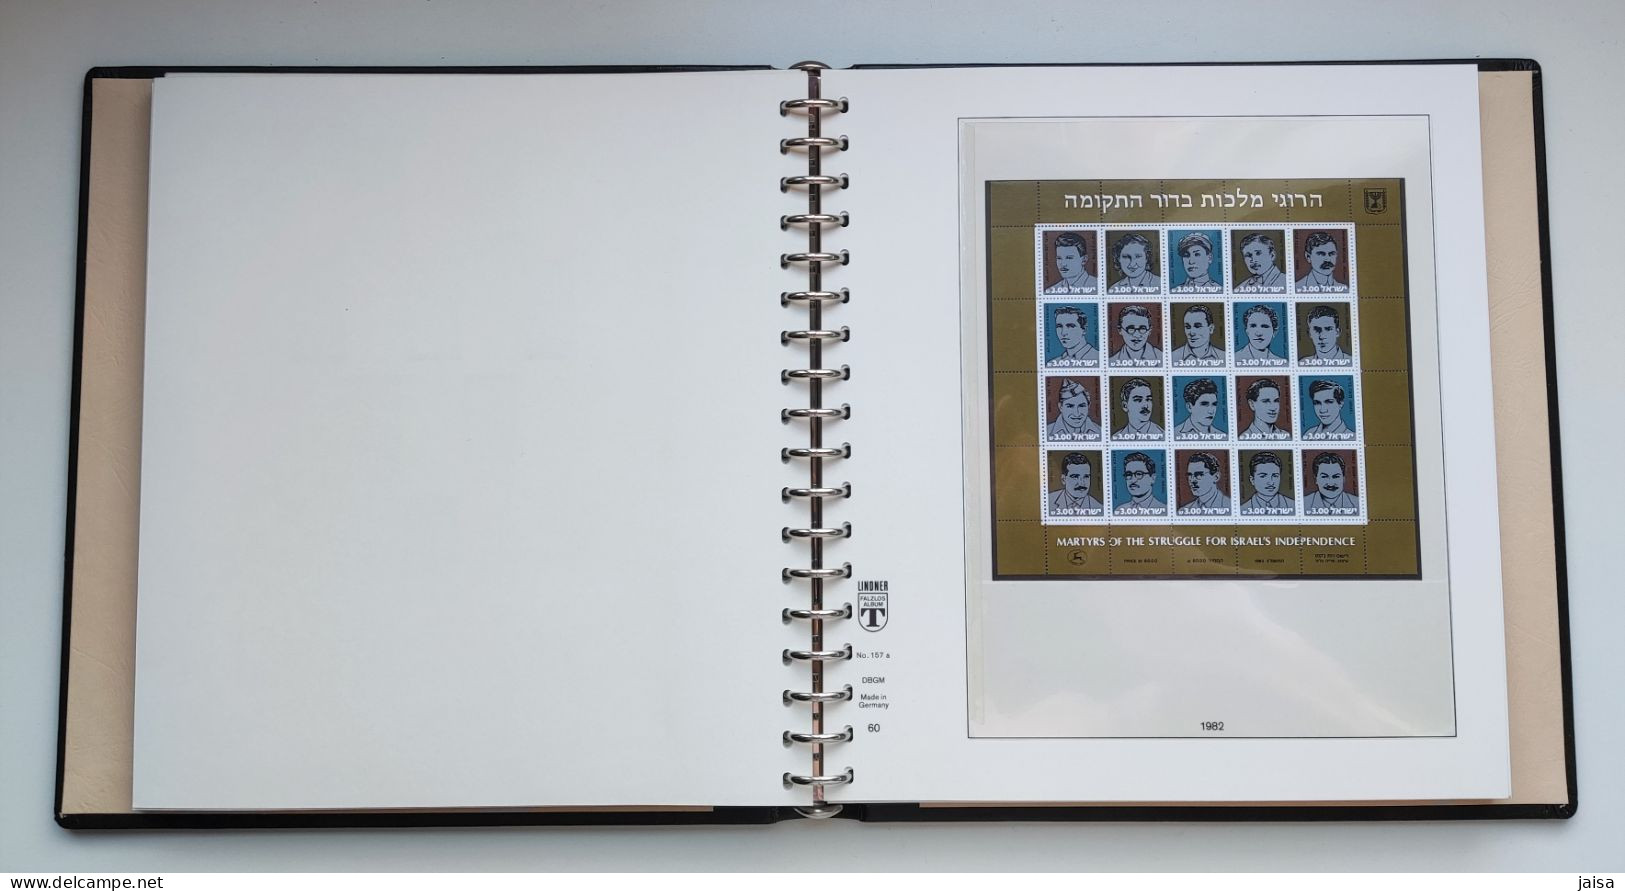 ISRAEL. Años 1977 - 1988 sellos nuevos. Álbum y suplementos LINDNER.